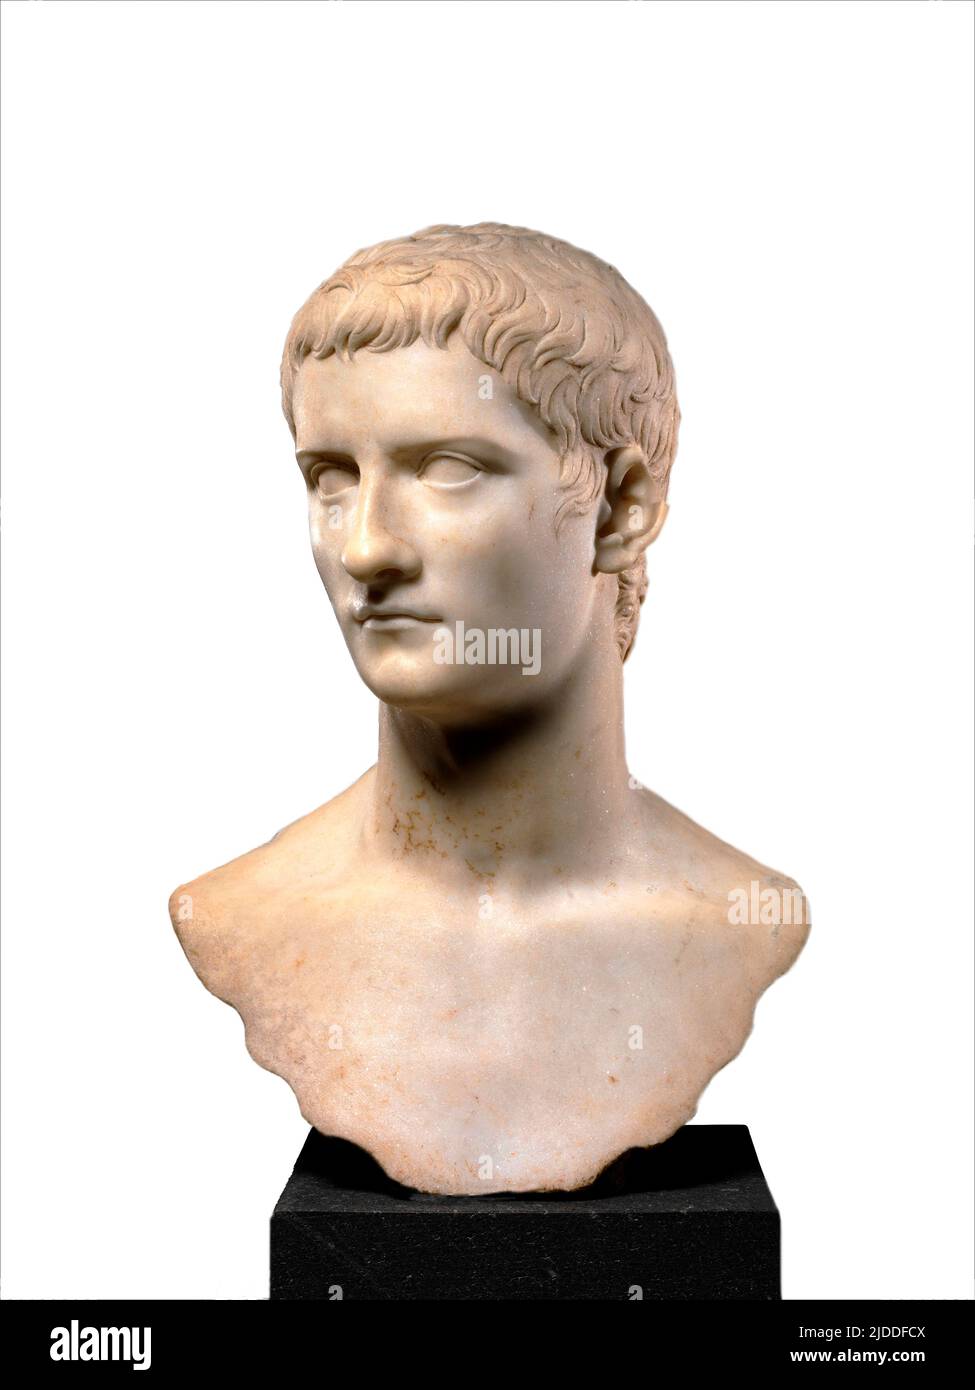 Busto de mármol del emperador Gaius, conocido como Caligula - 37–41 d.C. Foto de stock